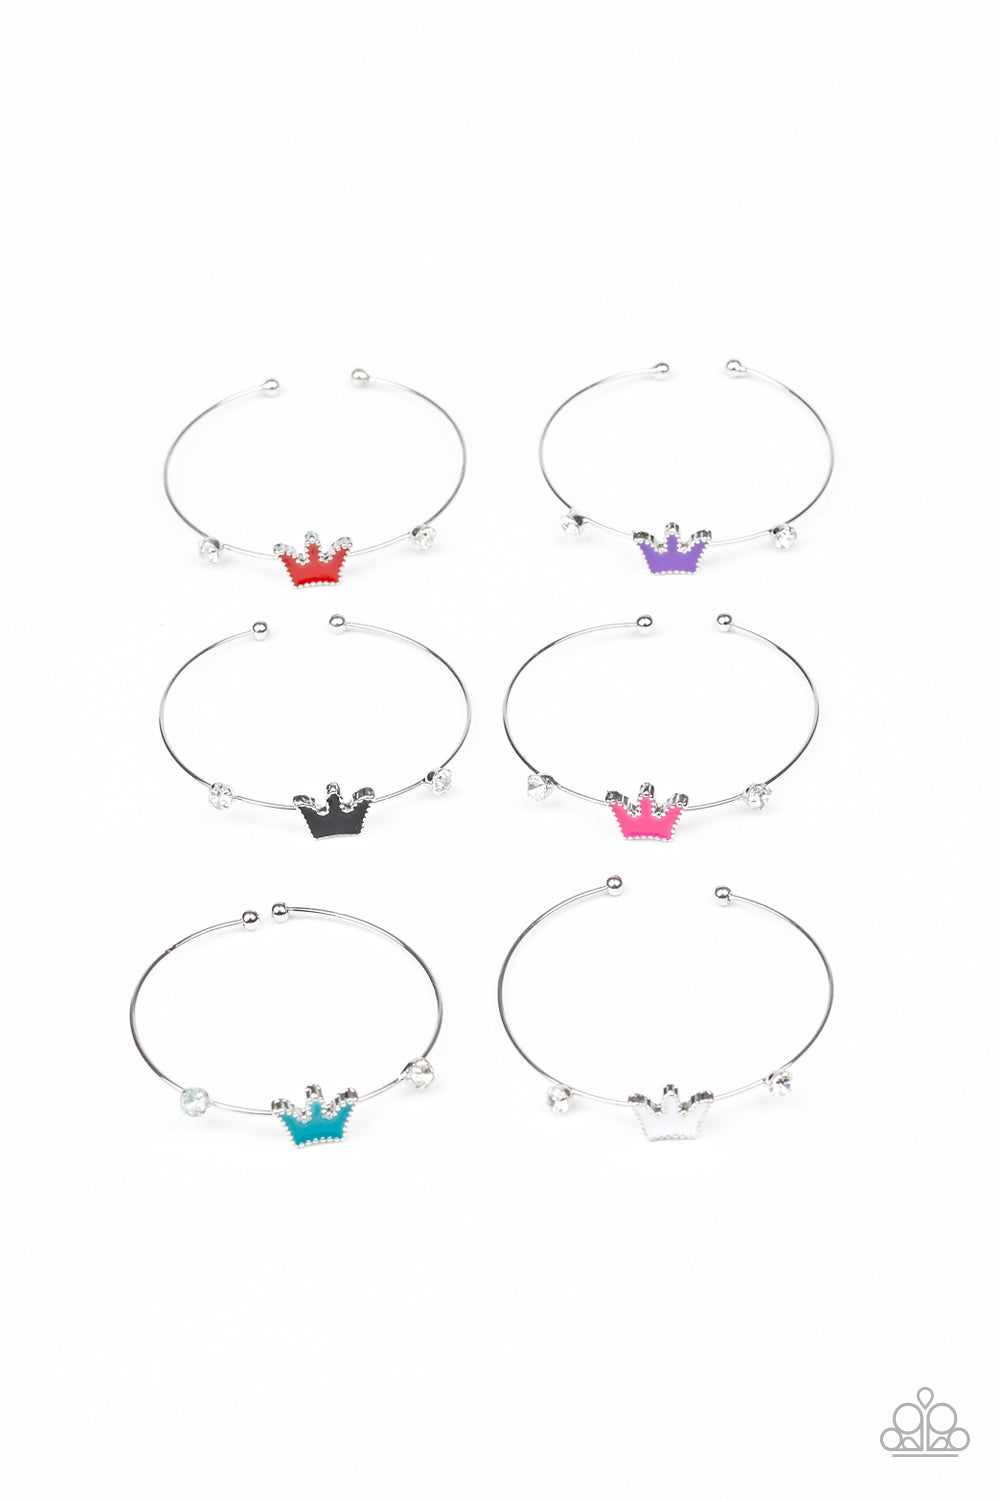 Starlet Shimmer Bracelet - Crown Cuff